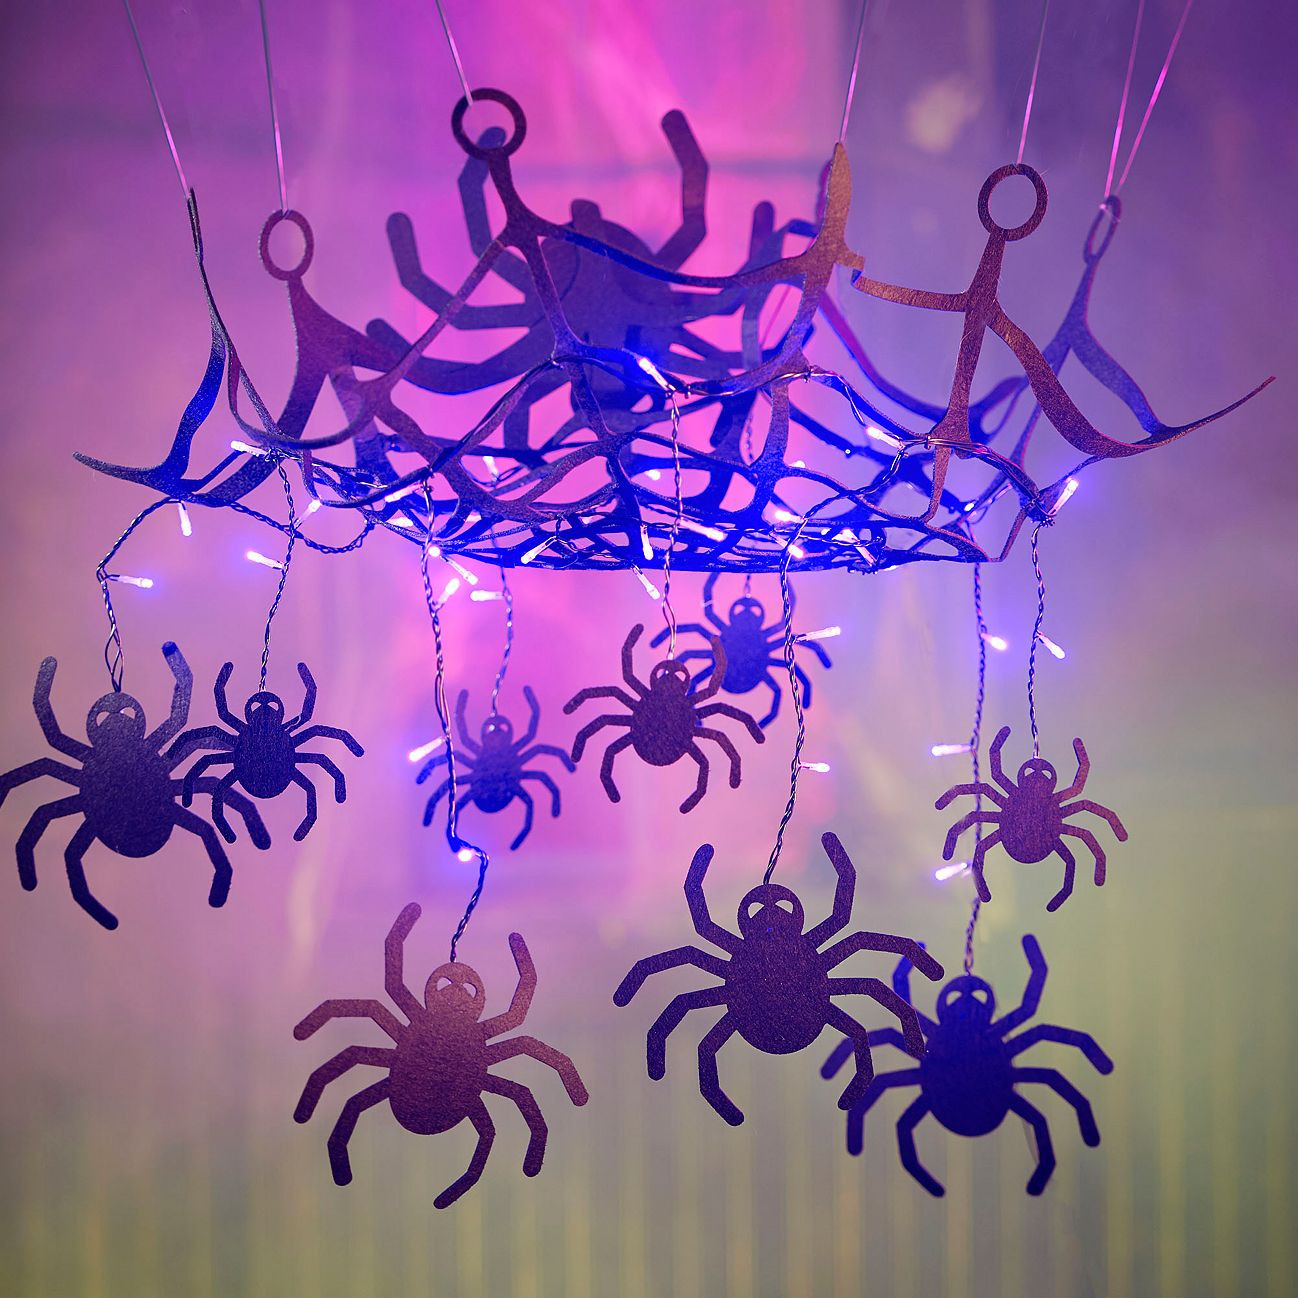 Spider Web Chandelier Halloween Decoration w Purple Lights